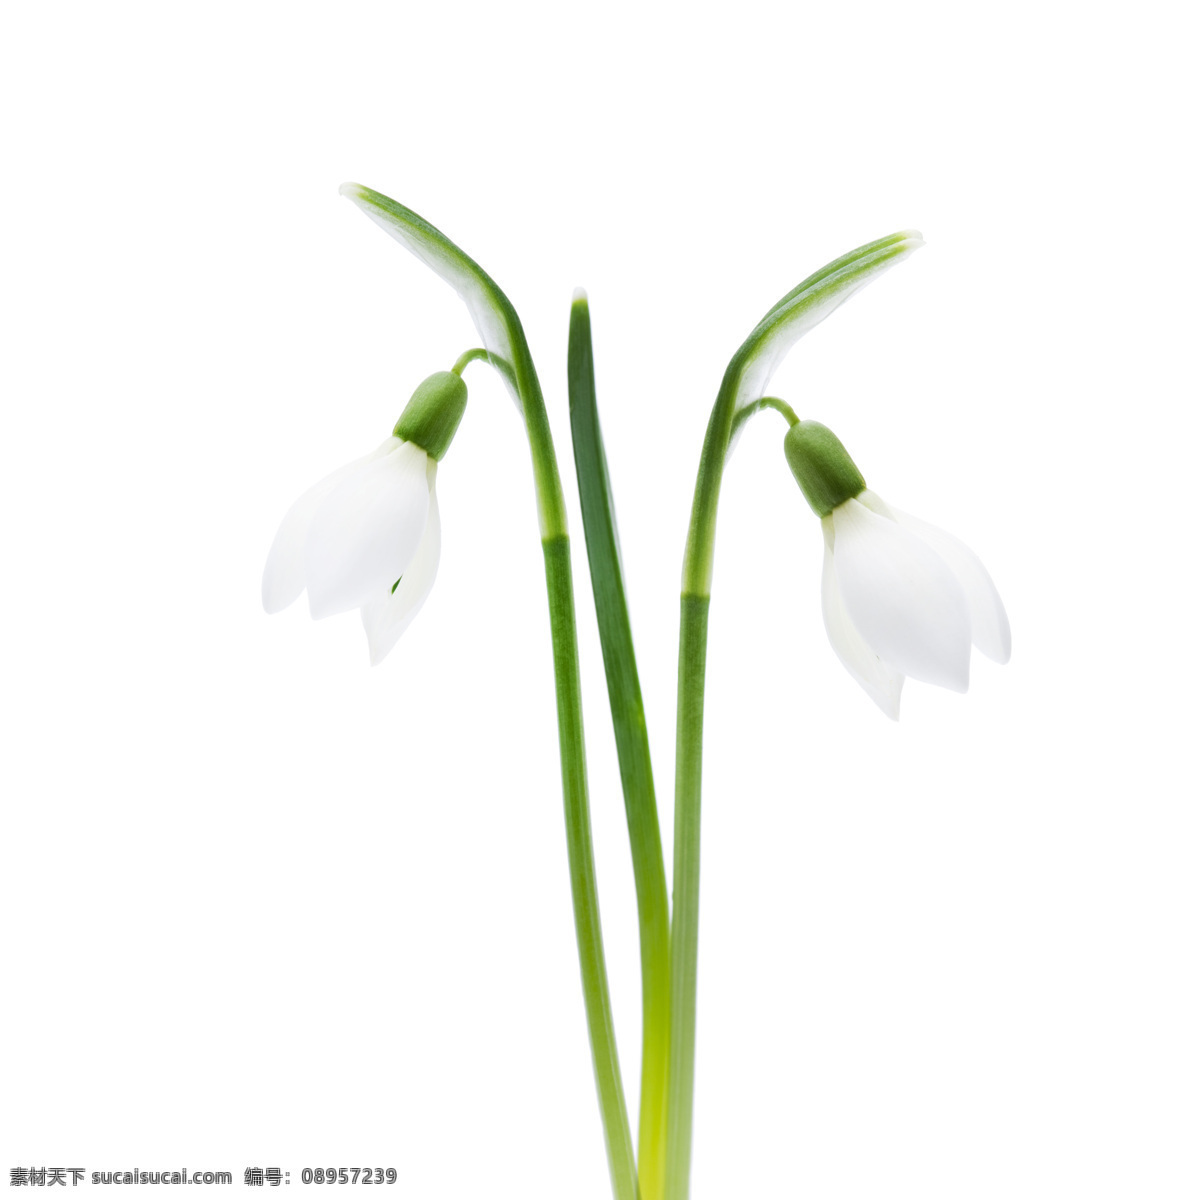 春天 白色 小花 白色鲜花 春天花朵 鲜花 花卉 漂亮鲜花 美丽鲜花 花草树木 生物世界